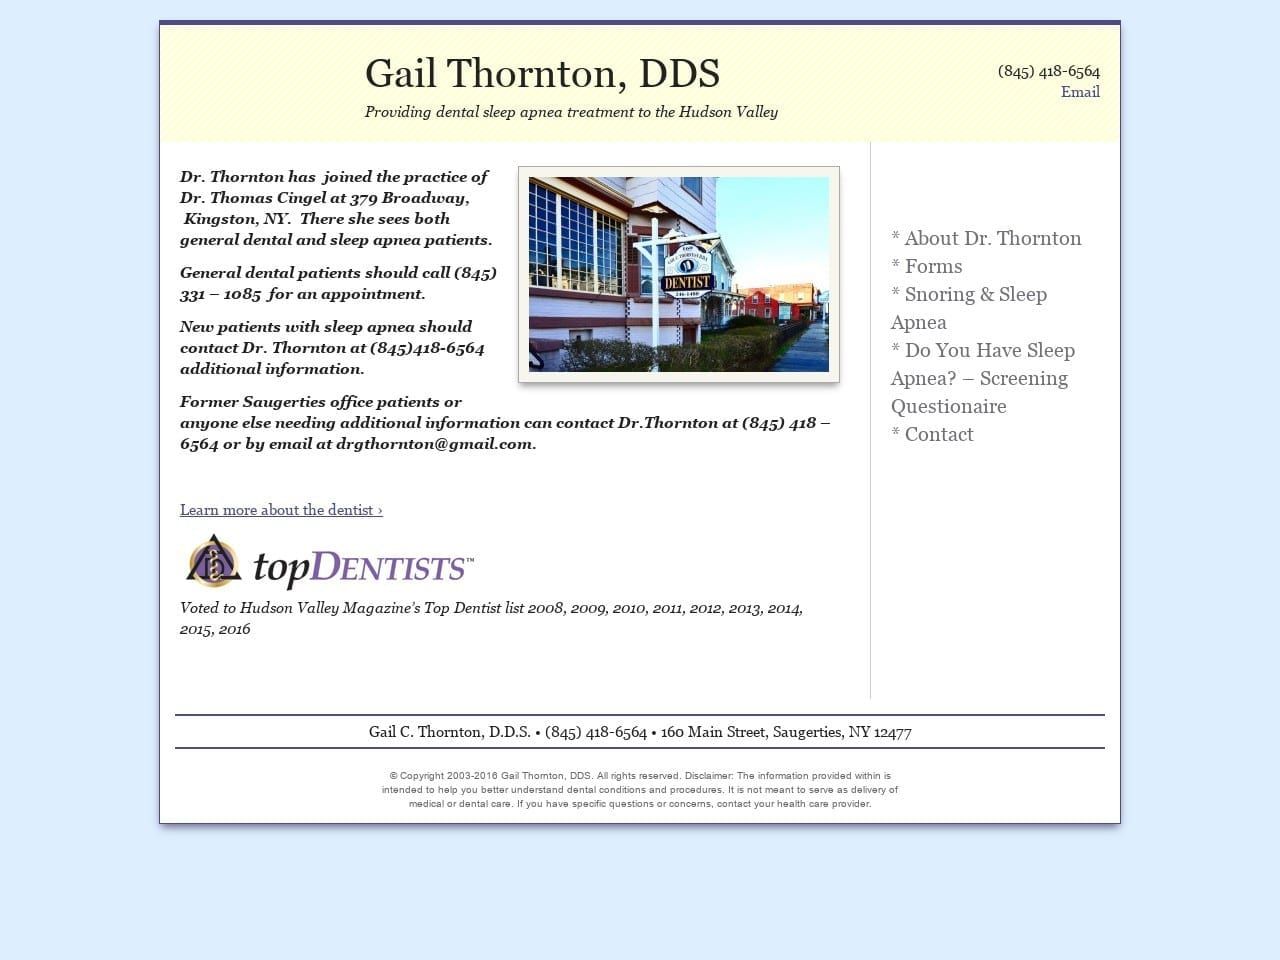 Gail Thornton DDS Website Screenshot from saugertiesdentist.com